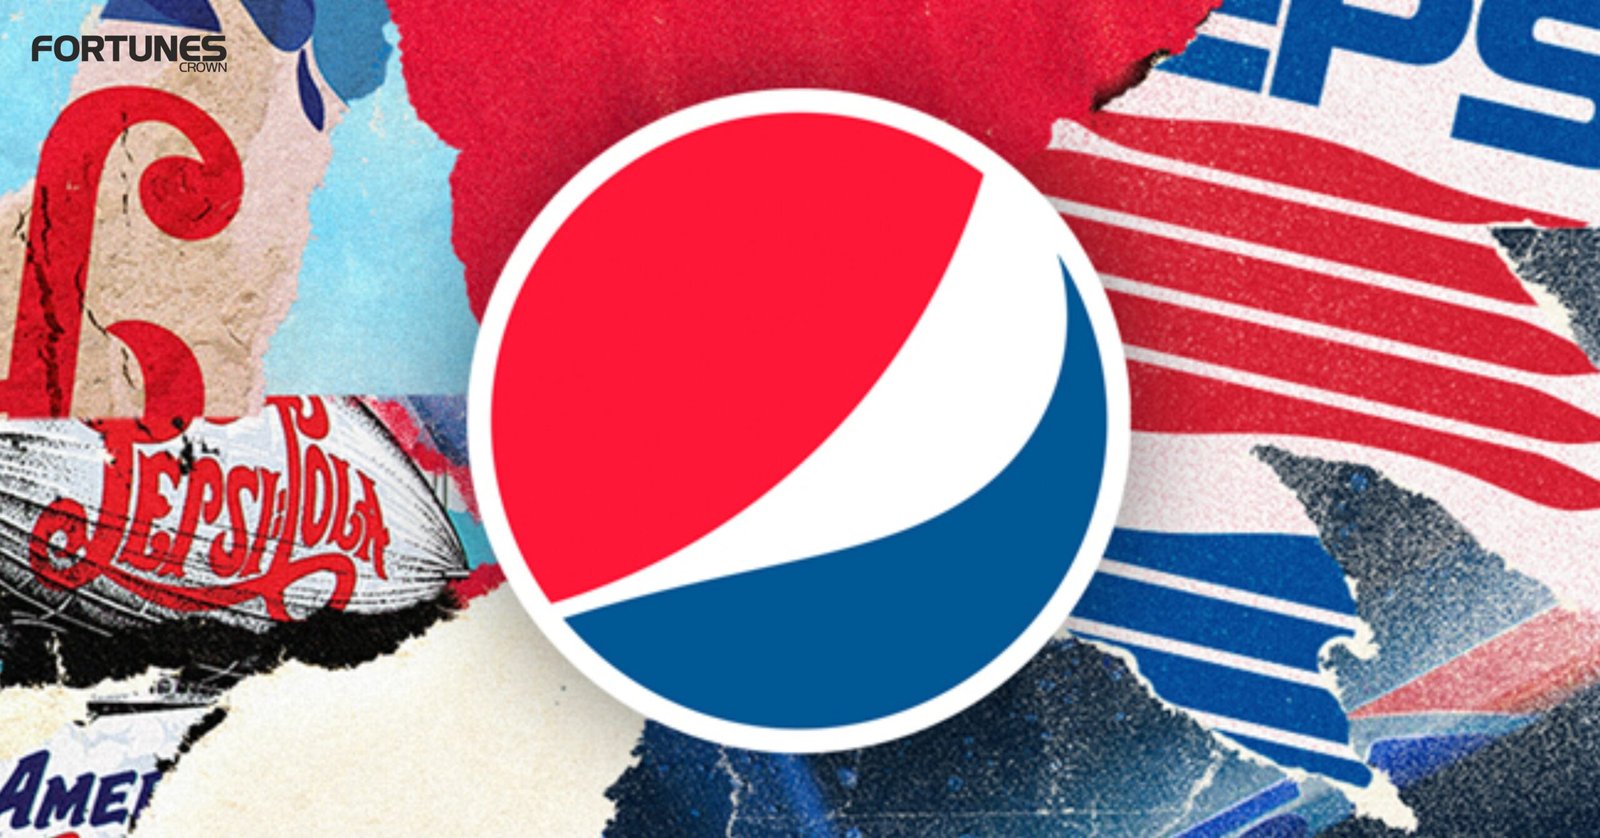 PepsiCo and Pepsi